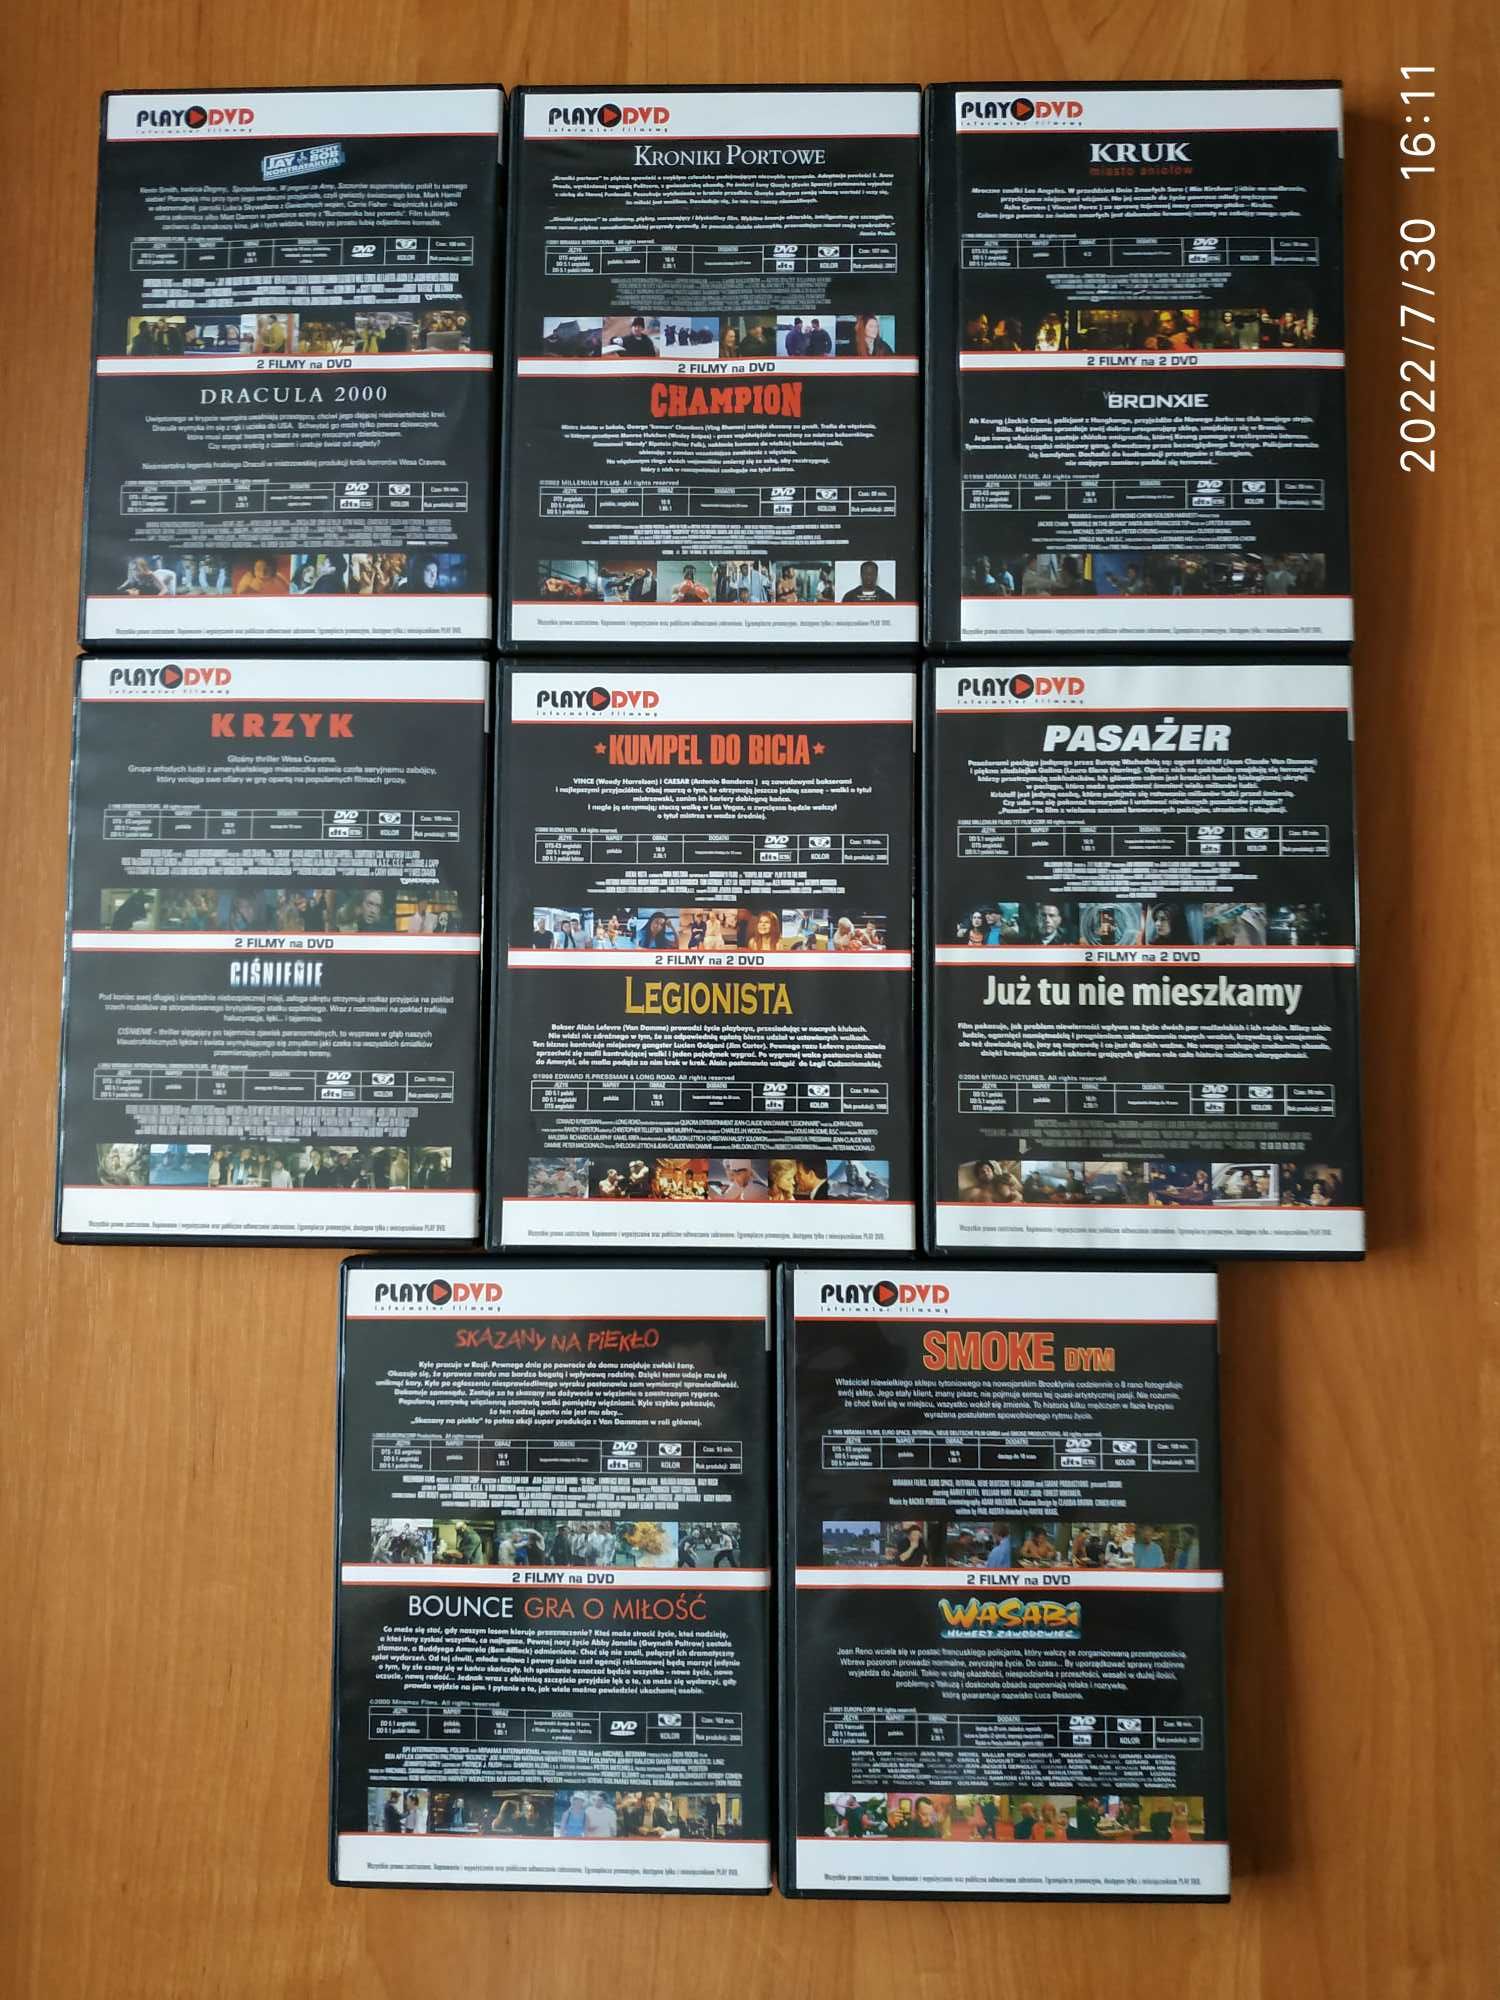 Wyprzedaż filmów - zestaw 34 płyt DVD z wydań Play DVD (Cube, Kruk)